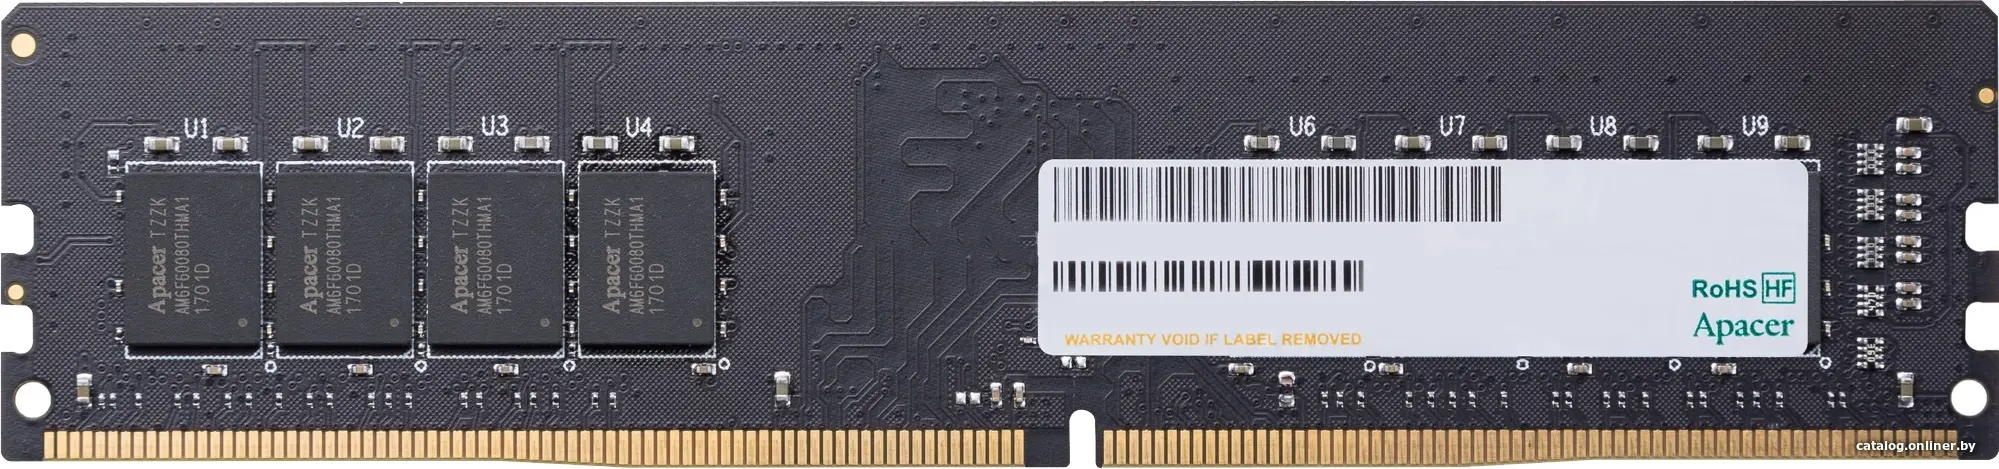 Купить Оперативная память Apacer 32GB DDR4 2666 (EL.32G2V.PRH), цена, опт и розница